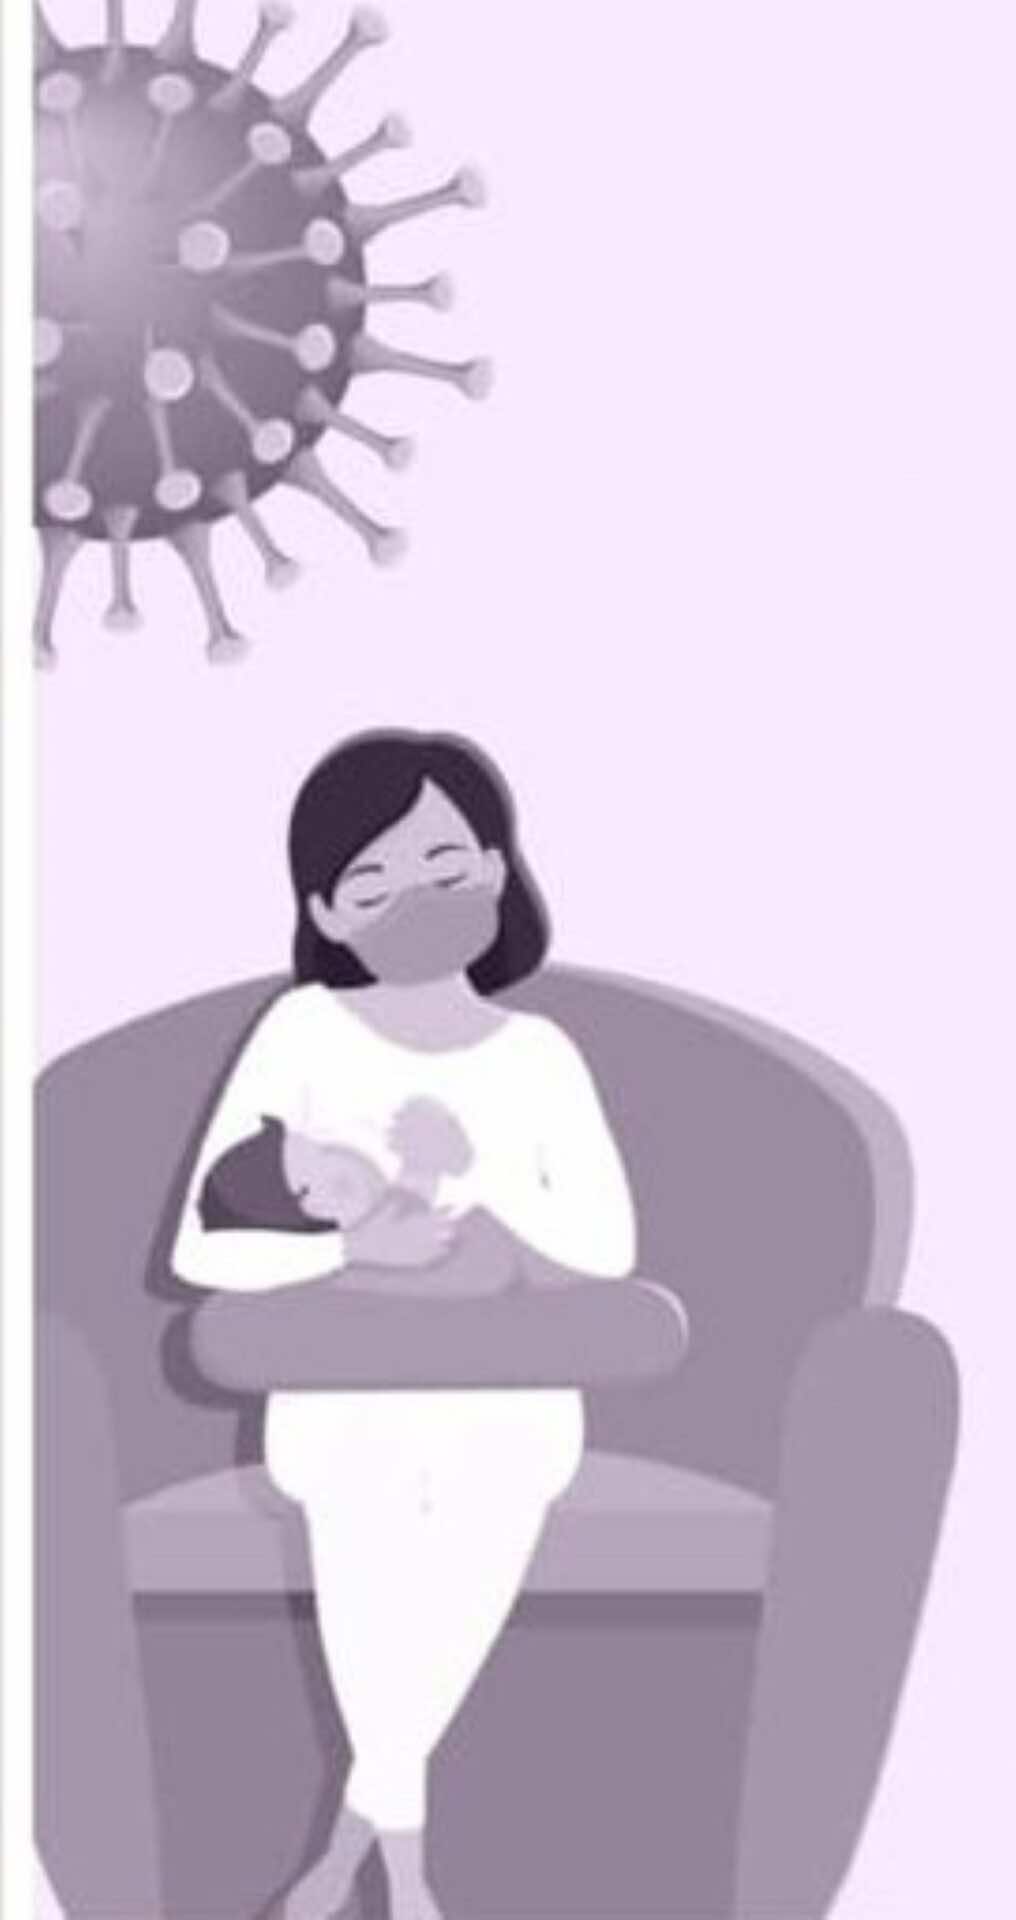 ماهي توصيات الرضاعة الطبيعية في حالة الأمهات المرضى بكوفيد-19 أو المعرضات للإصابة؟